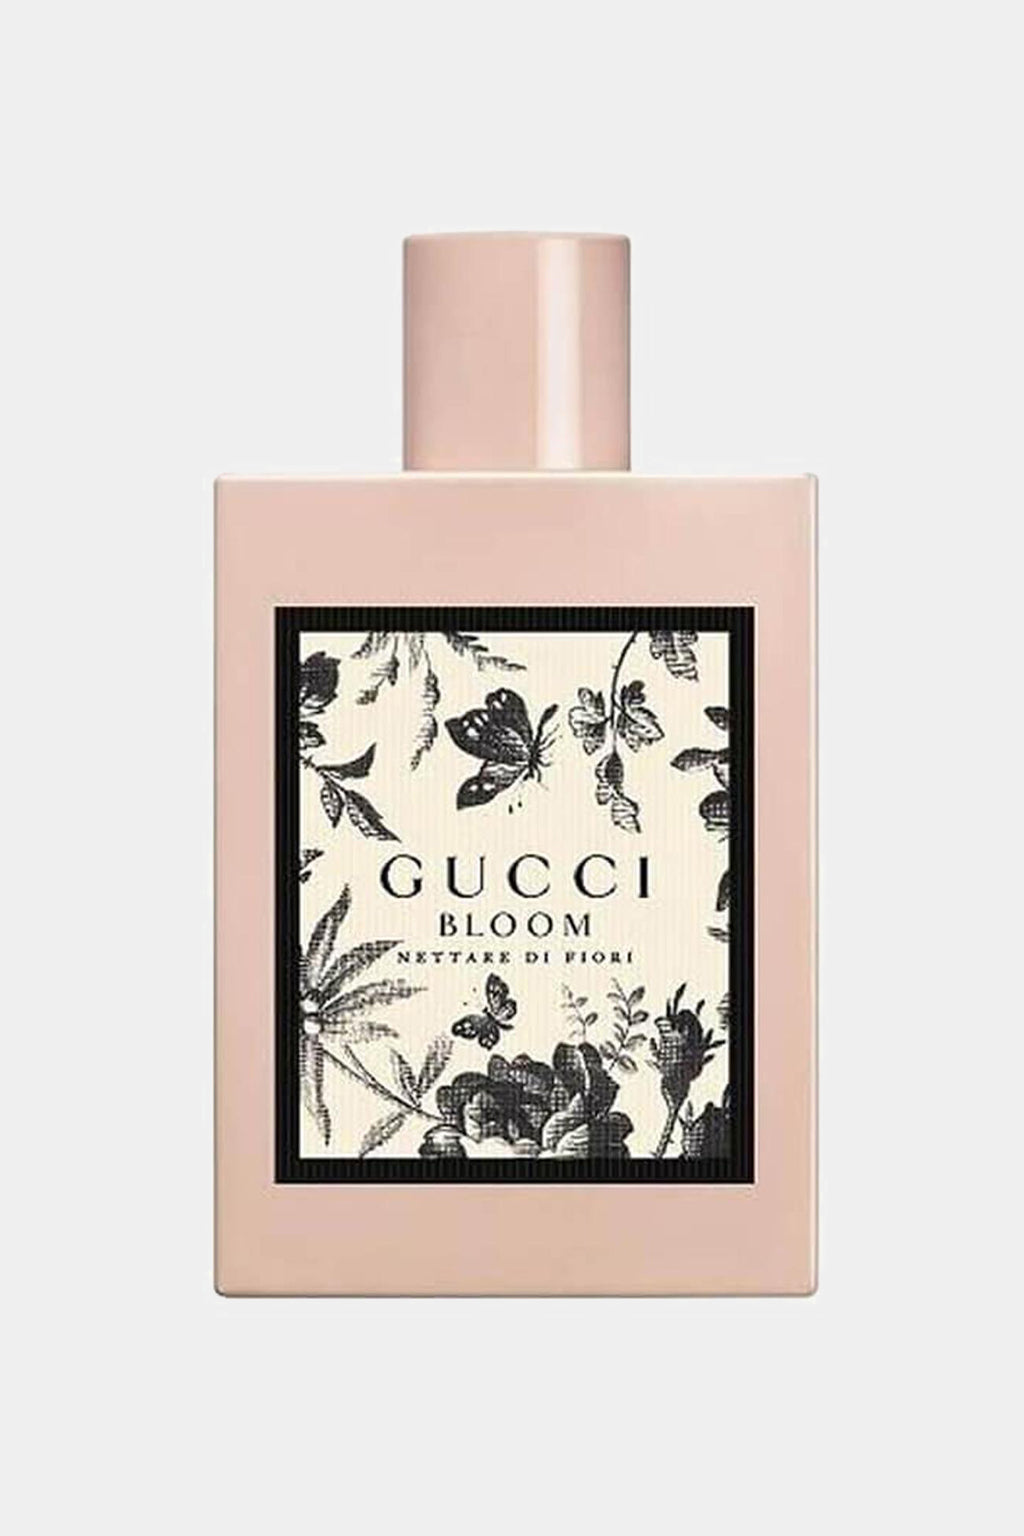 Gucci - Bloom Nettare Di Fiori Eau de Parfum